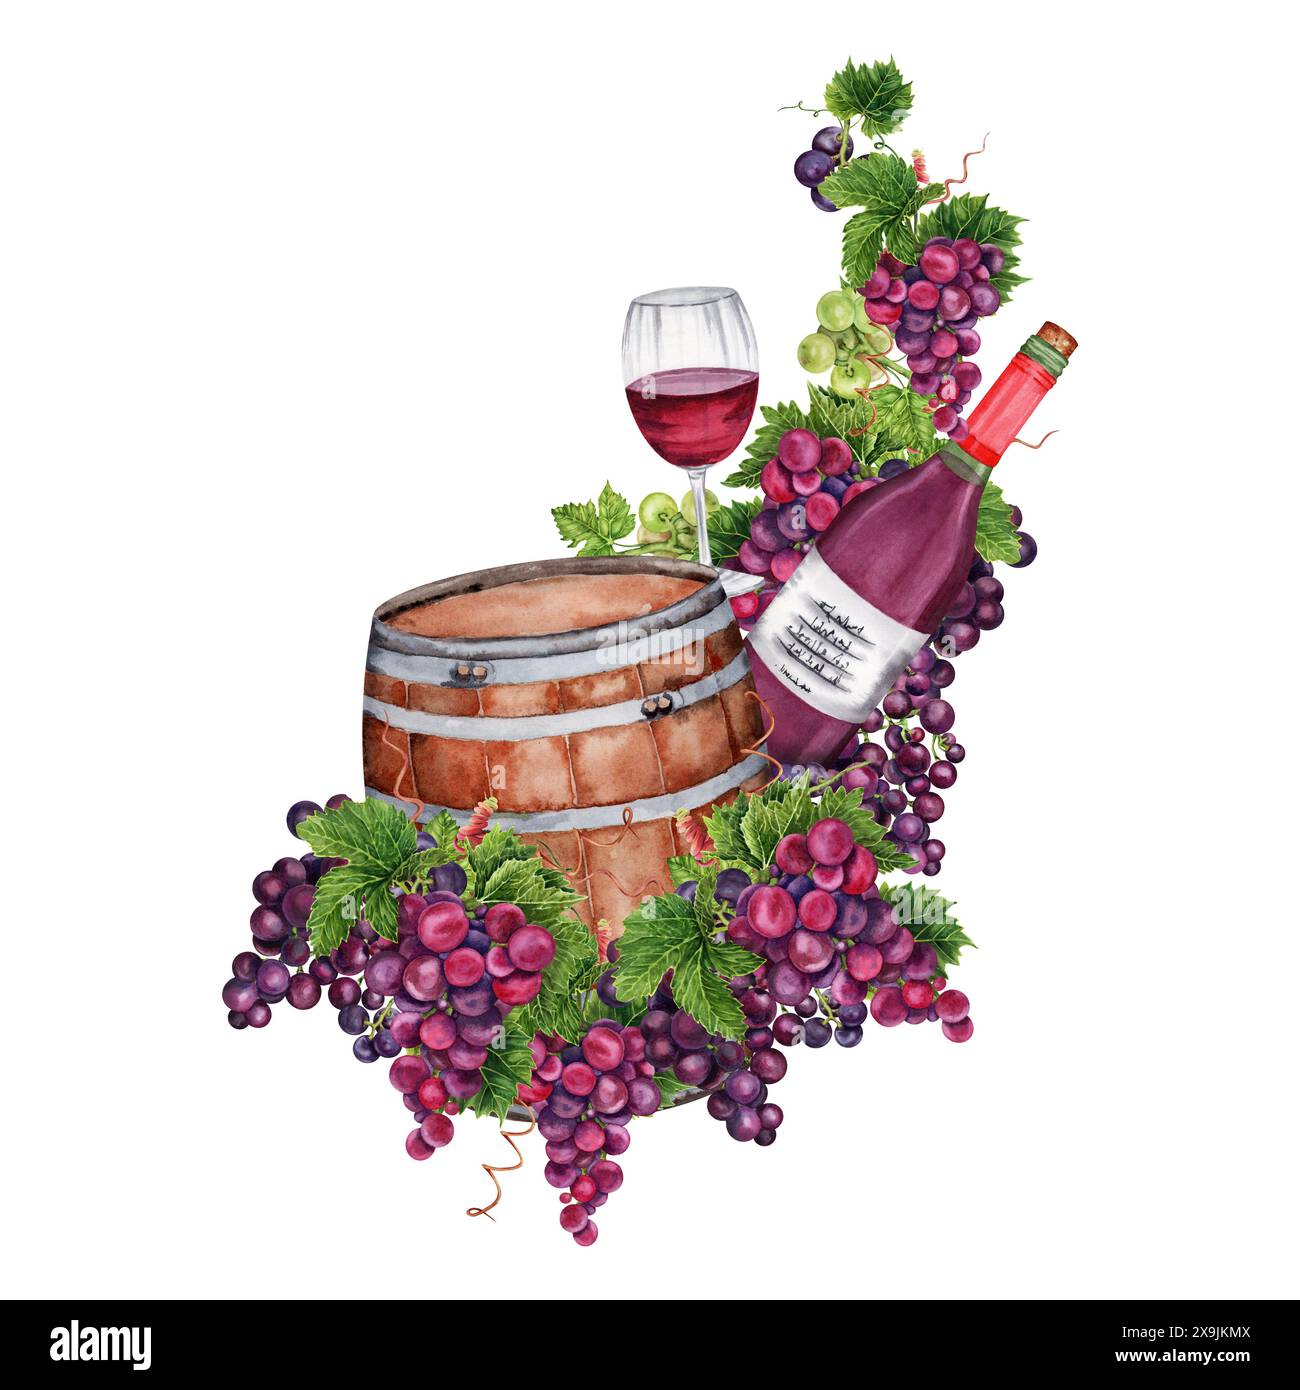 Bicchiere di vino rosso con bottiglia e botte di legno. Elemento di design con grappoli d'uva per inviti alla degustazione di vini, carte di vini e menu. Acquerello Foto Stock